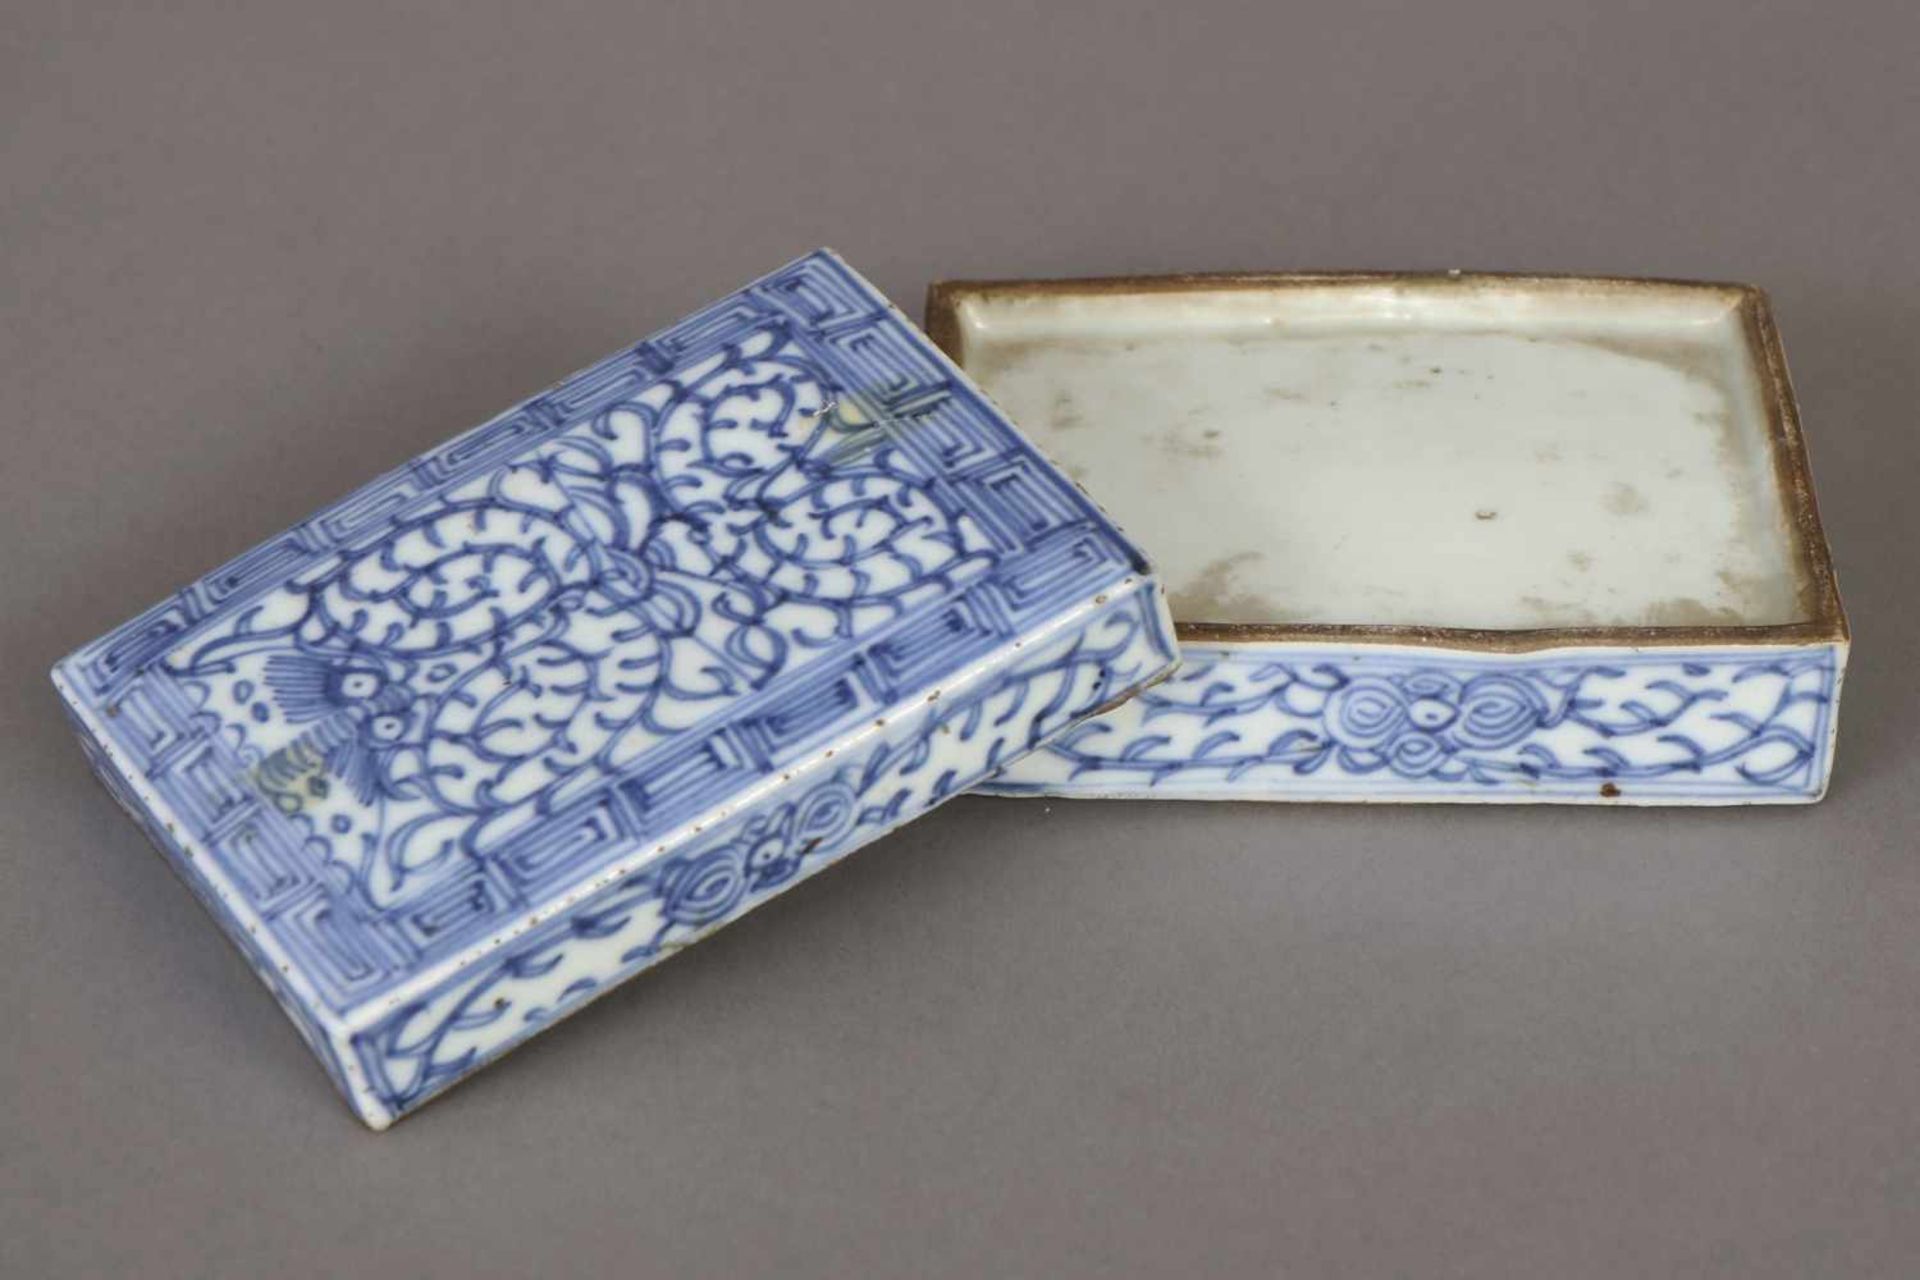 Chinesische Deckeldose im Stile MingPorzellan, wohl 1. Hälfte 19. Jhdt., rechteckige Form mit - Image 2 of 2